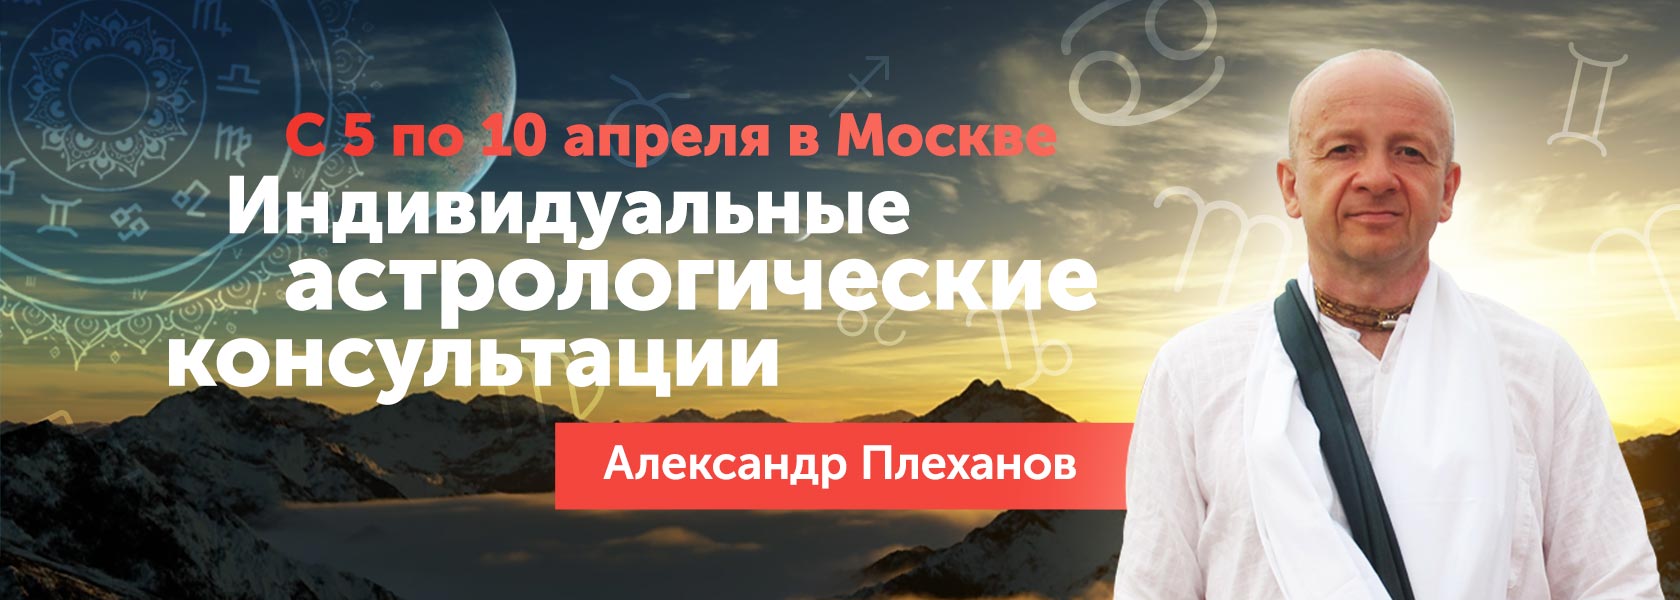 консультации астролога в москве